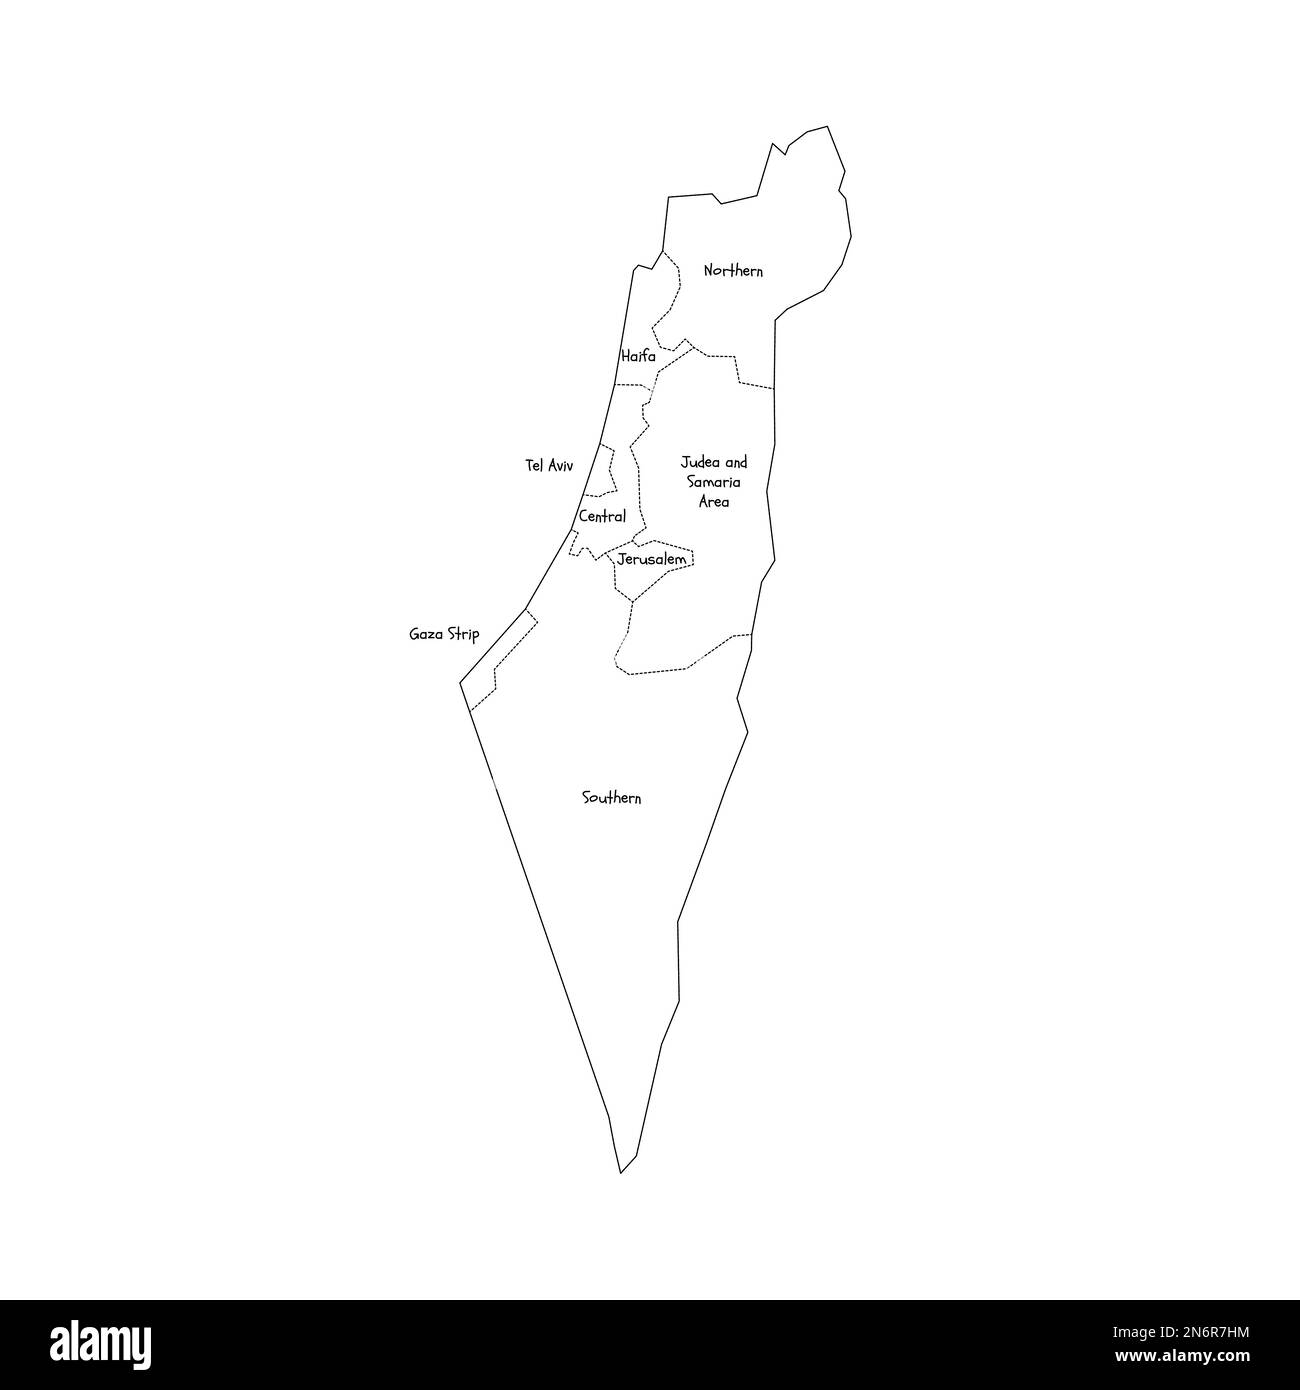 Israele mappa politica delle divisioni amministrative - distretti, striscia di Gaza e Judea e Samaria Area. Mappa di stile doodle disegnata a mano con bordi di contorno neri ed etichette di nome. Illustrazione Vettoriale